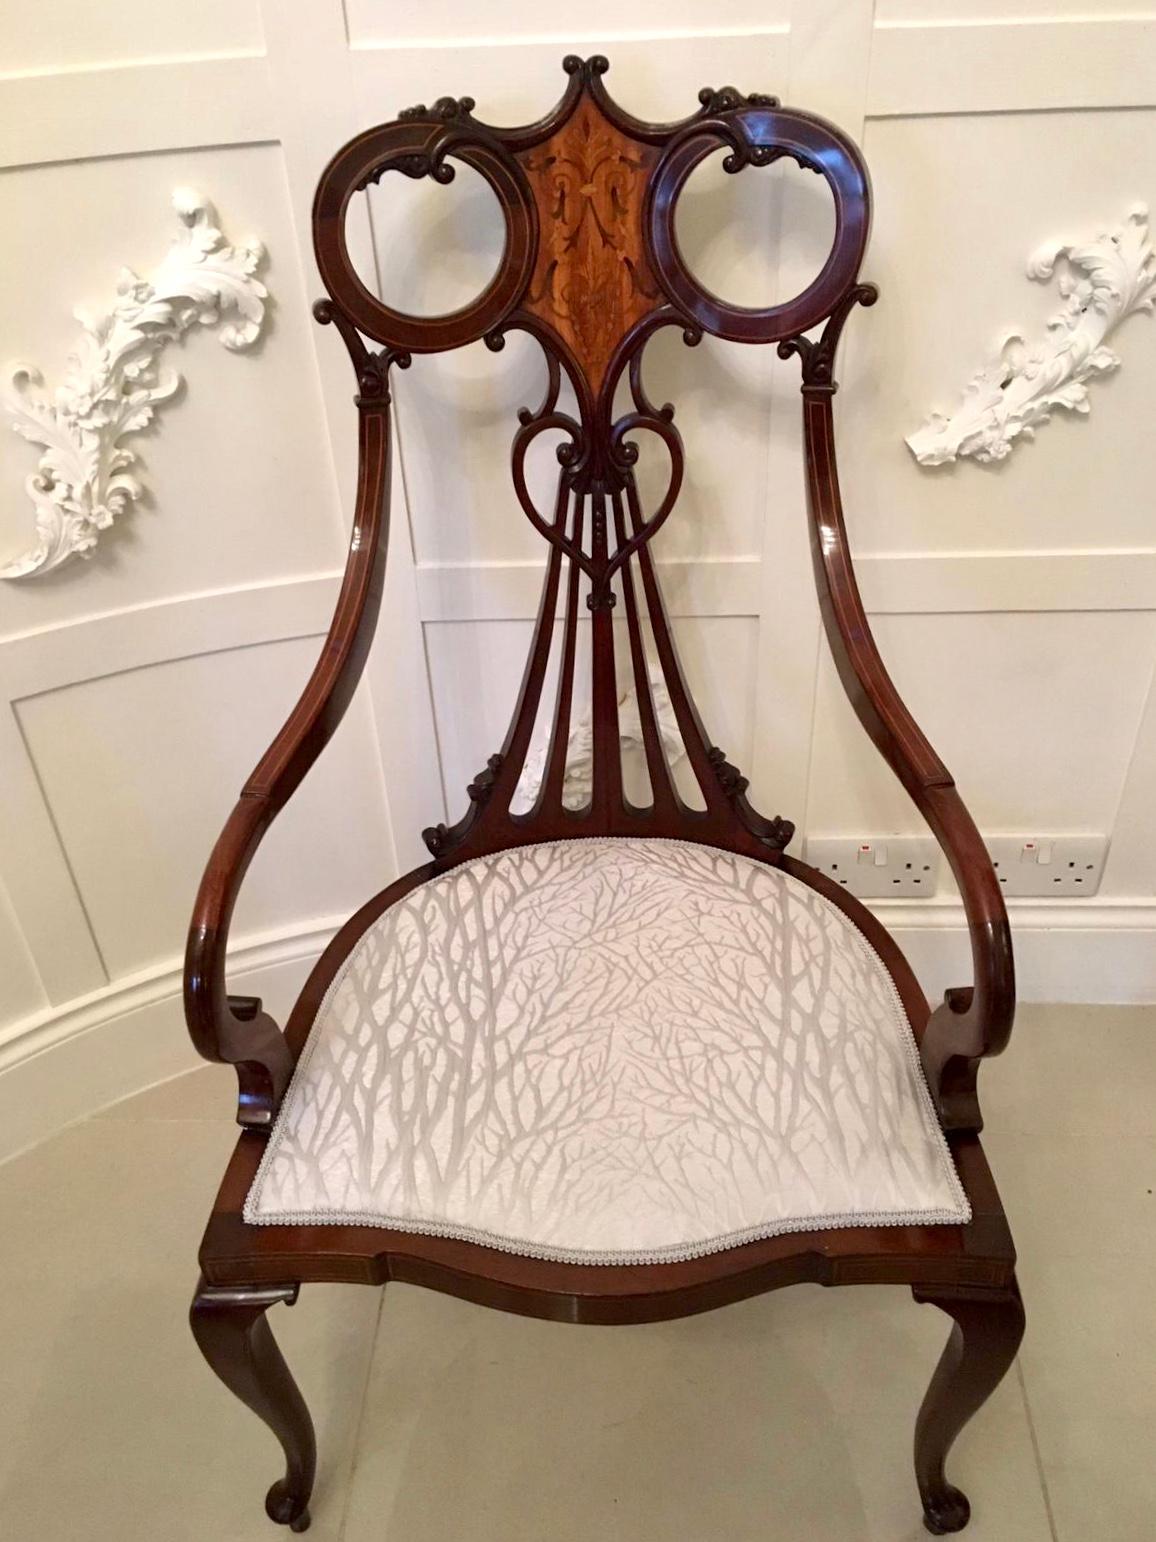 Exceptionnel fauteuil antique du 19e siècle en acajou marqueté de l'époque victorienne, doté d'une traverse supérieure de forme inhabituelle et magnifique et d'un panneau marqueté en bois de satin de qualité. Il est orné d'une jolie pièce centrale